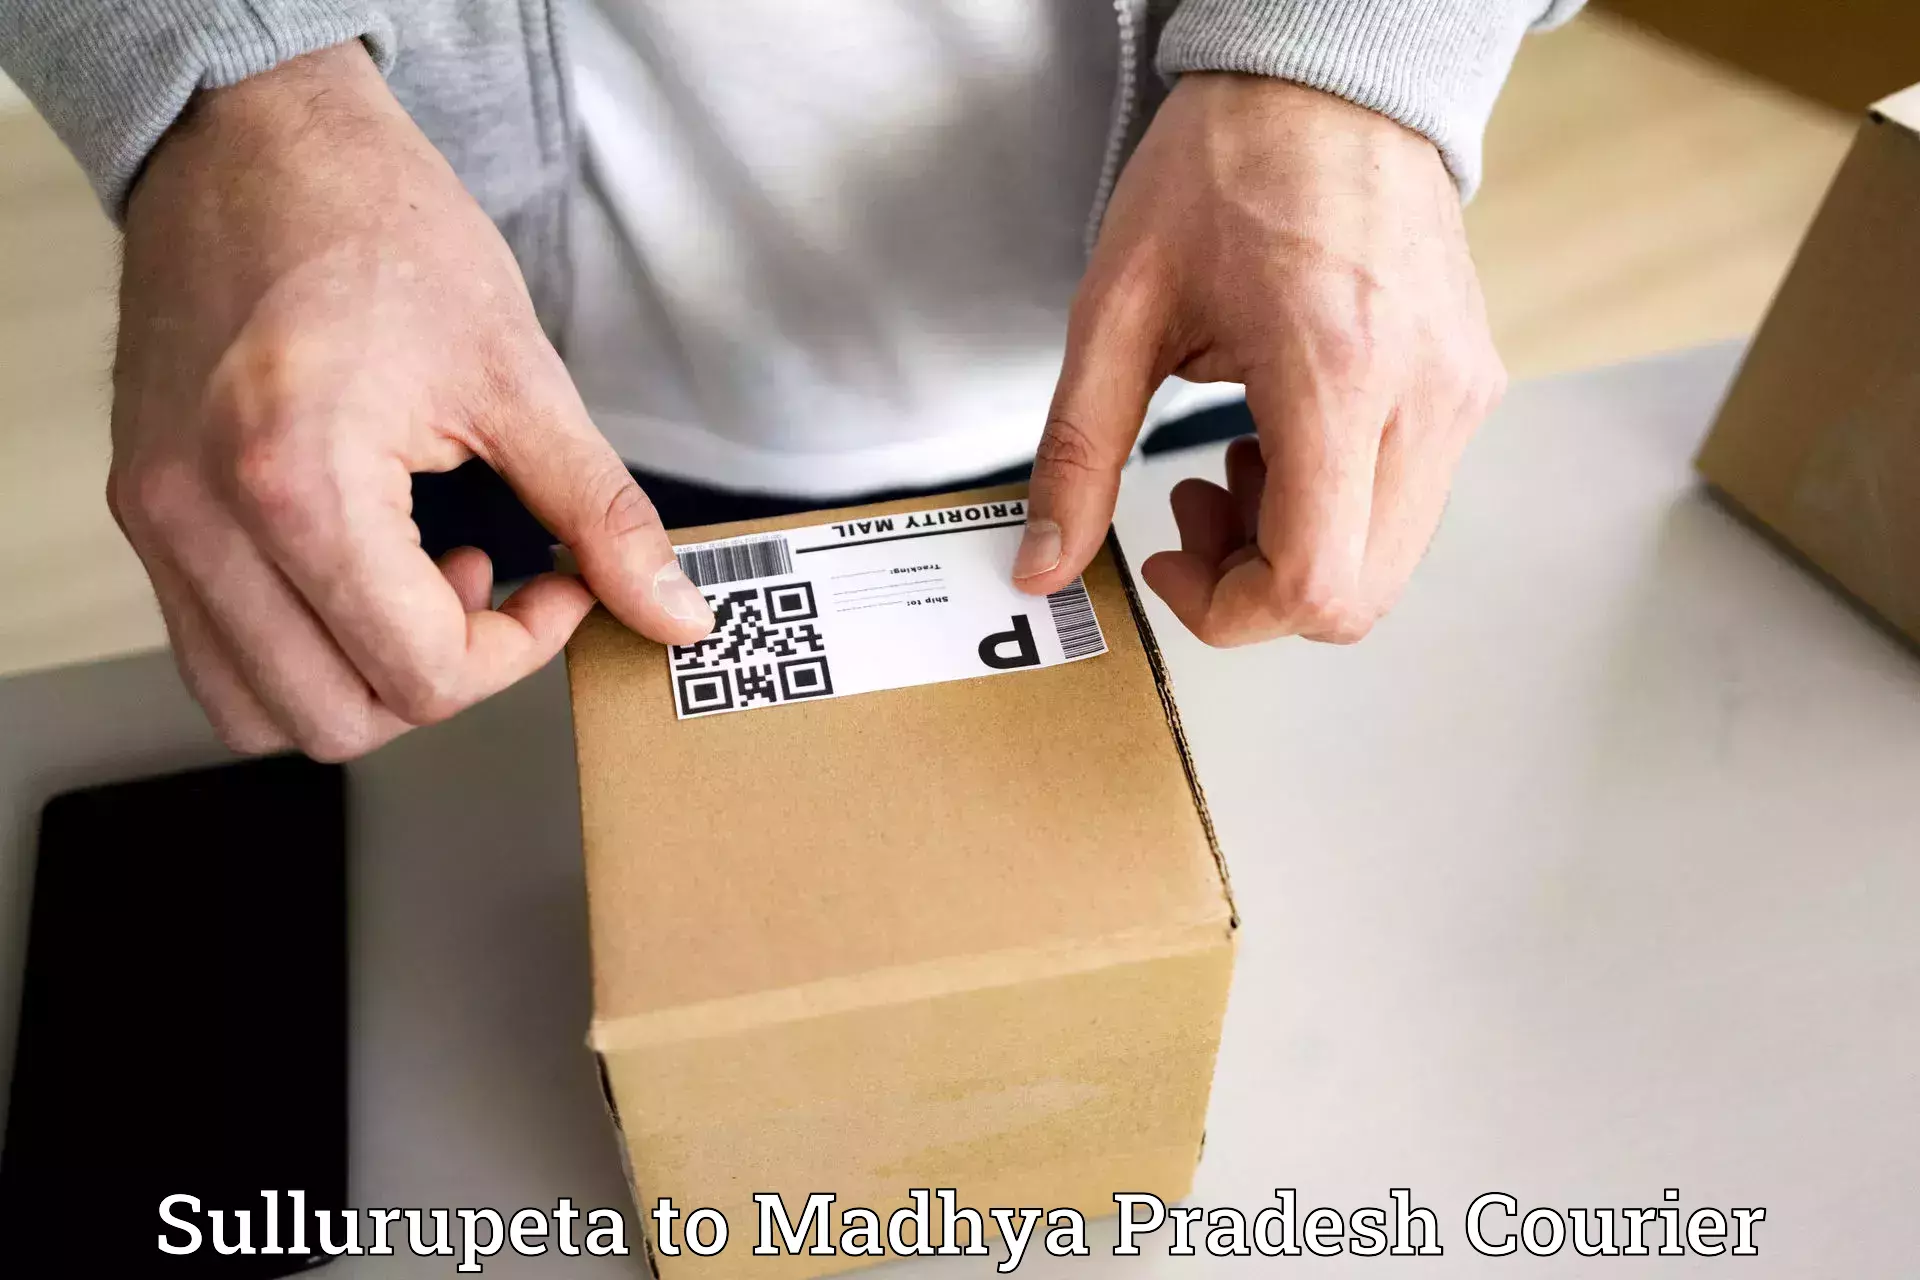 Reliable delivery network Sullurupeta to Seoni Malwa